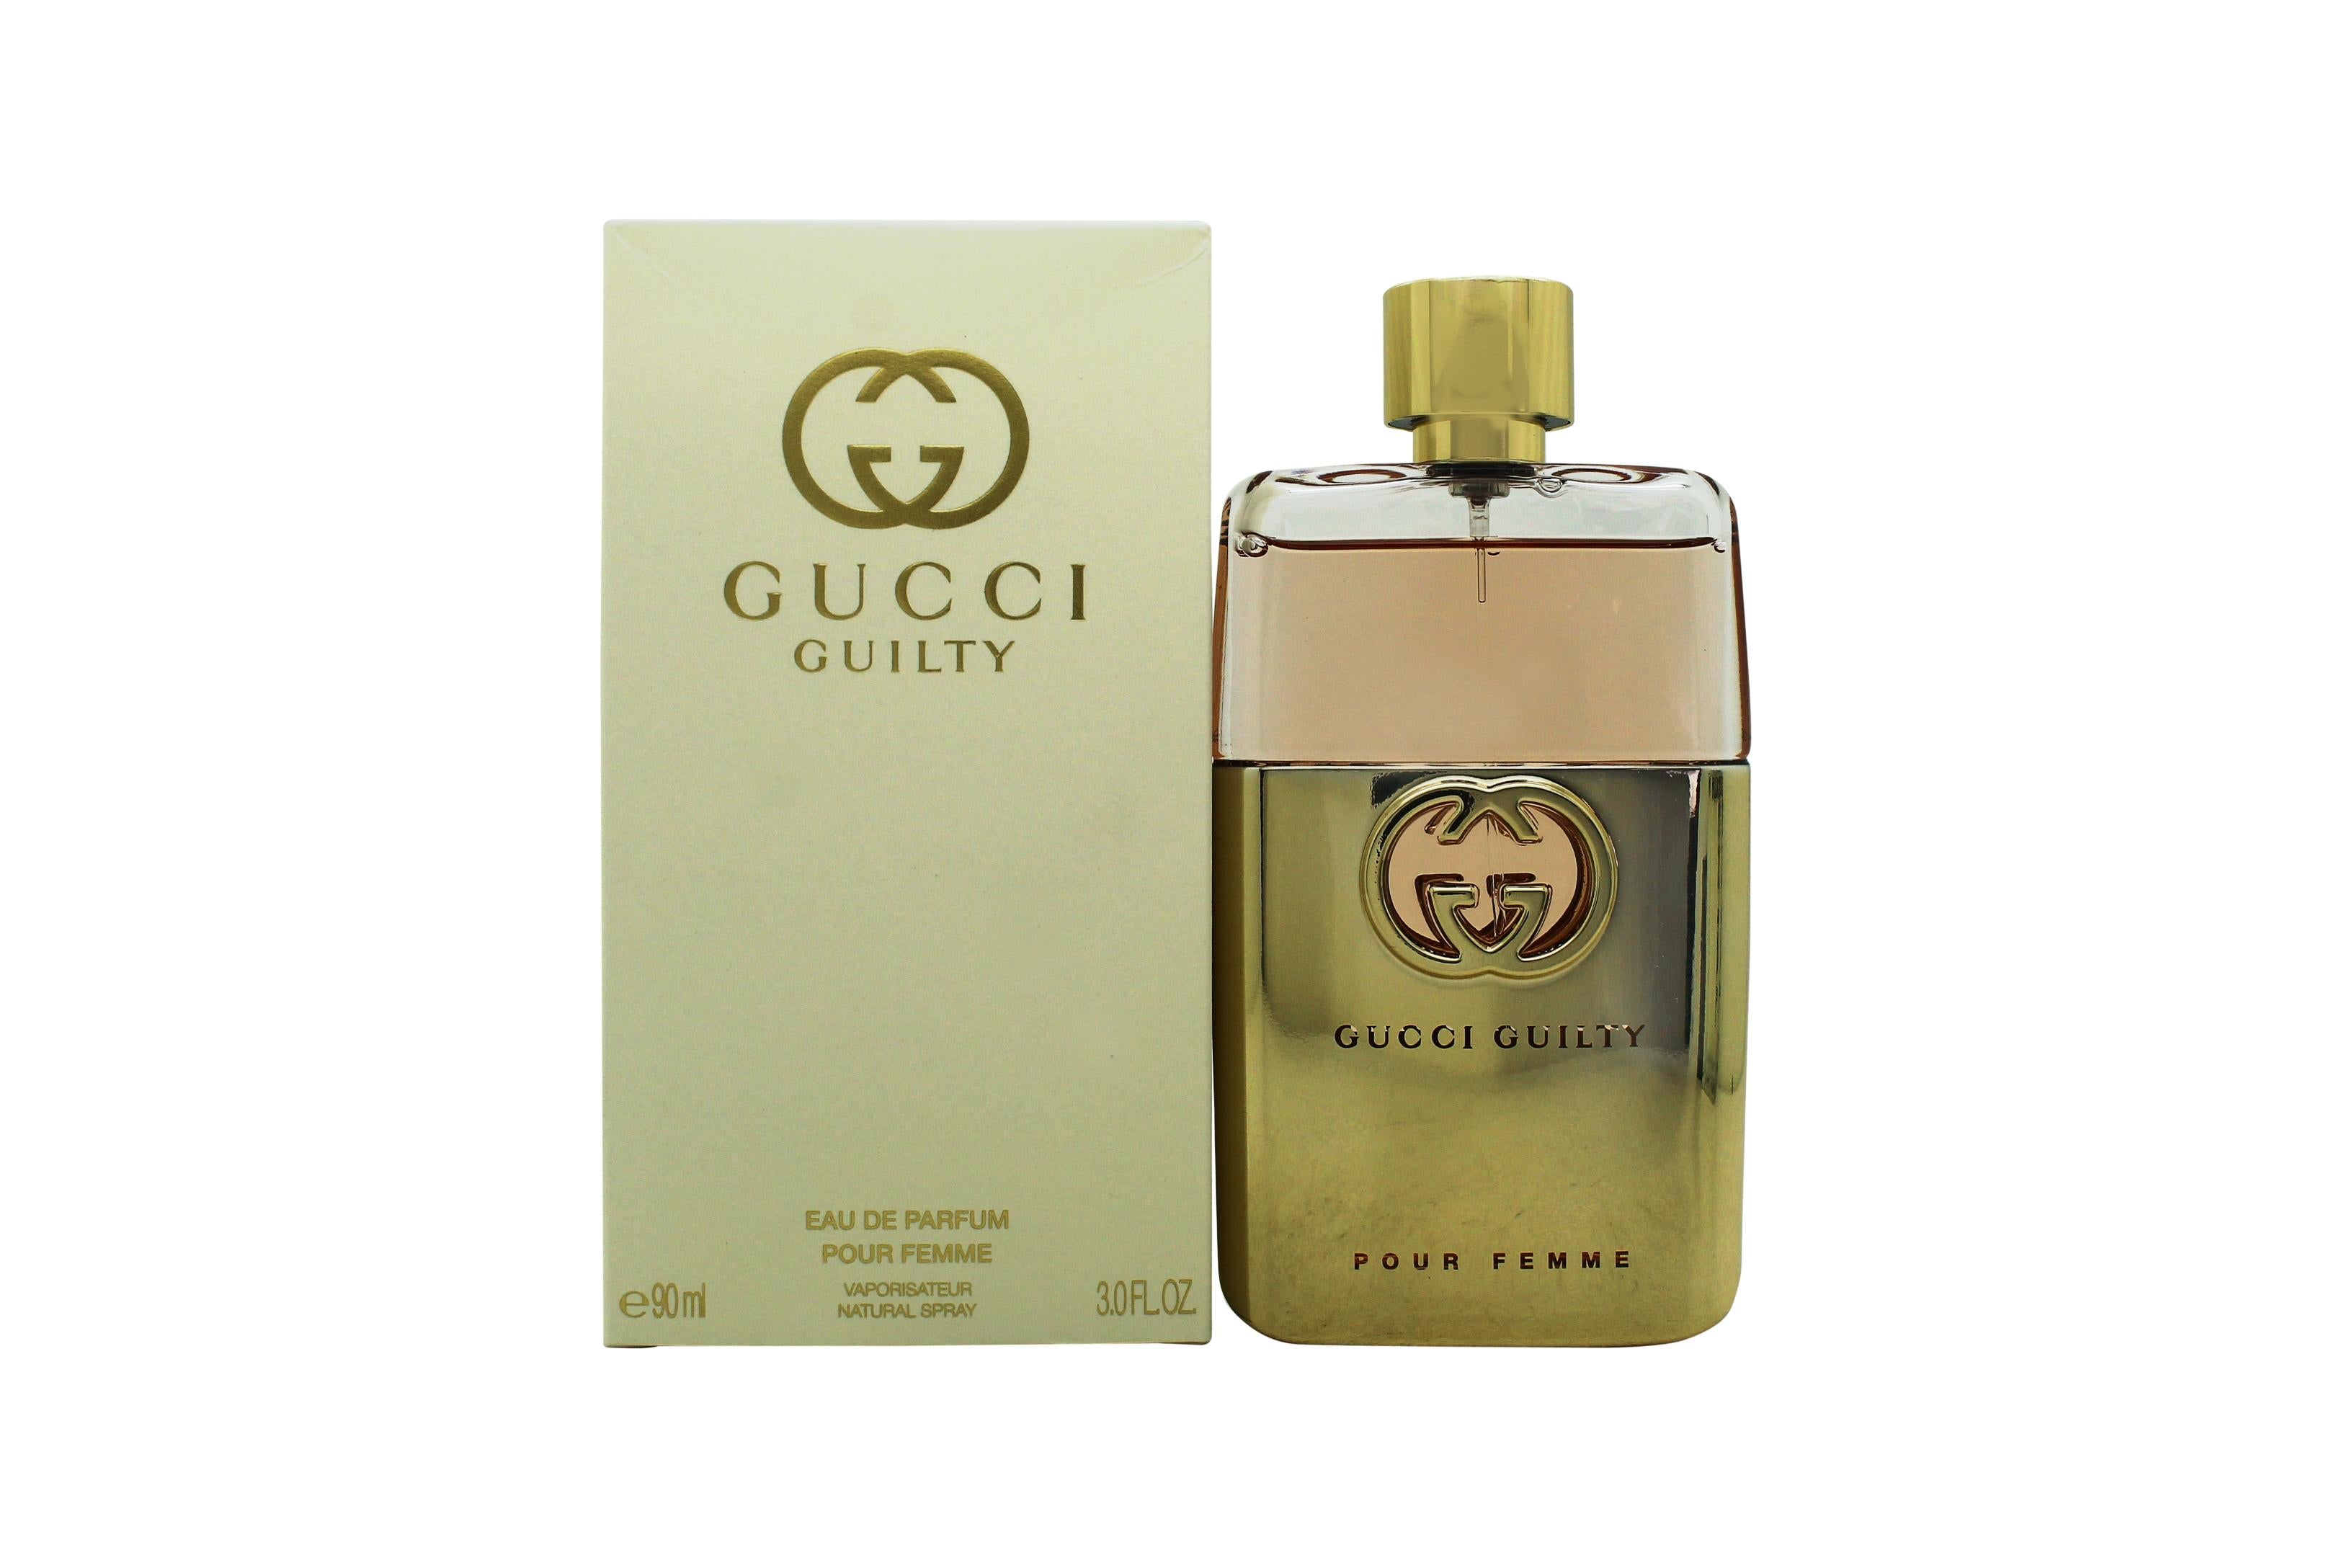 View Gucci Guilty Pour Femme Eau de Parfum 90ml Spray information